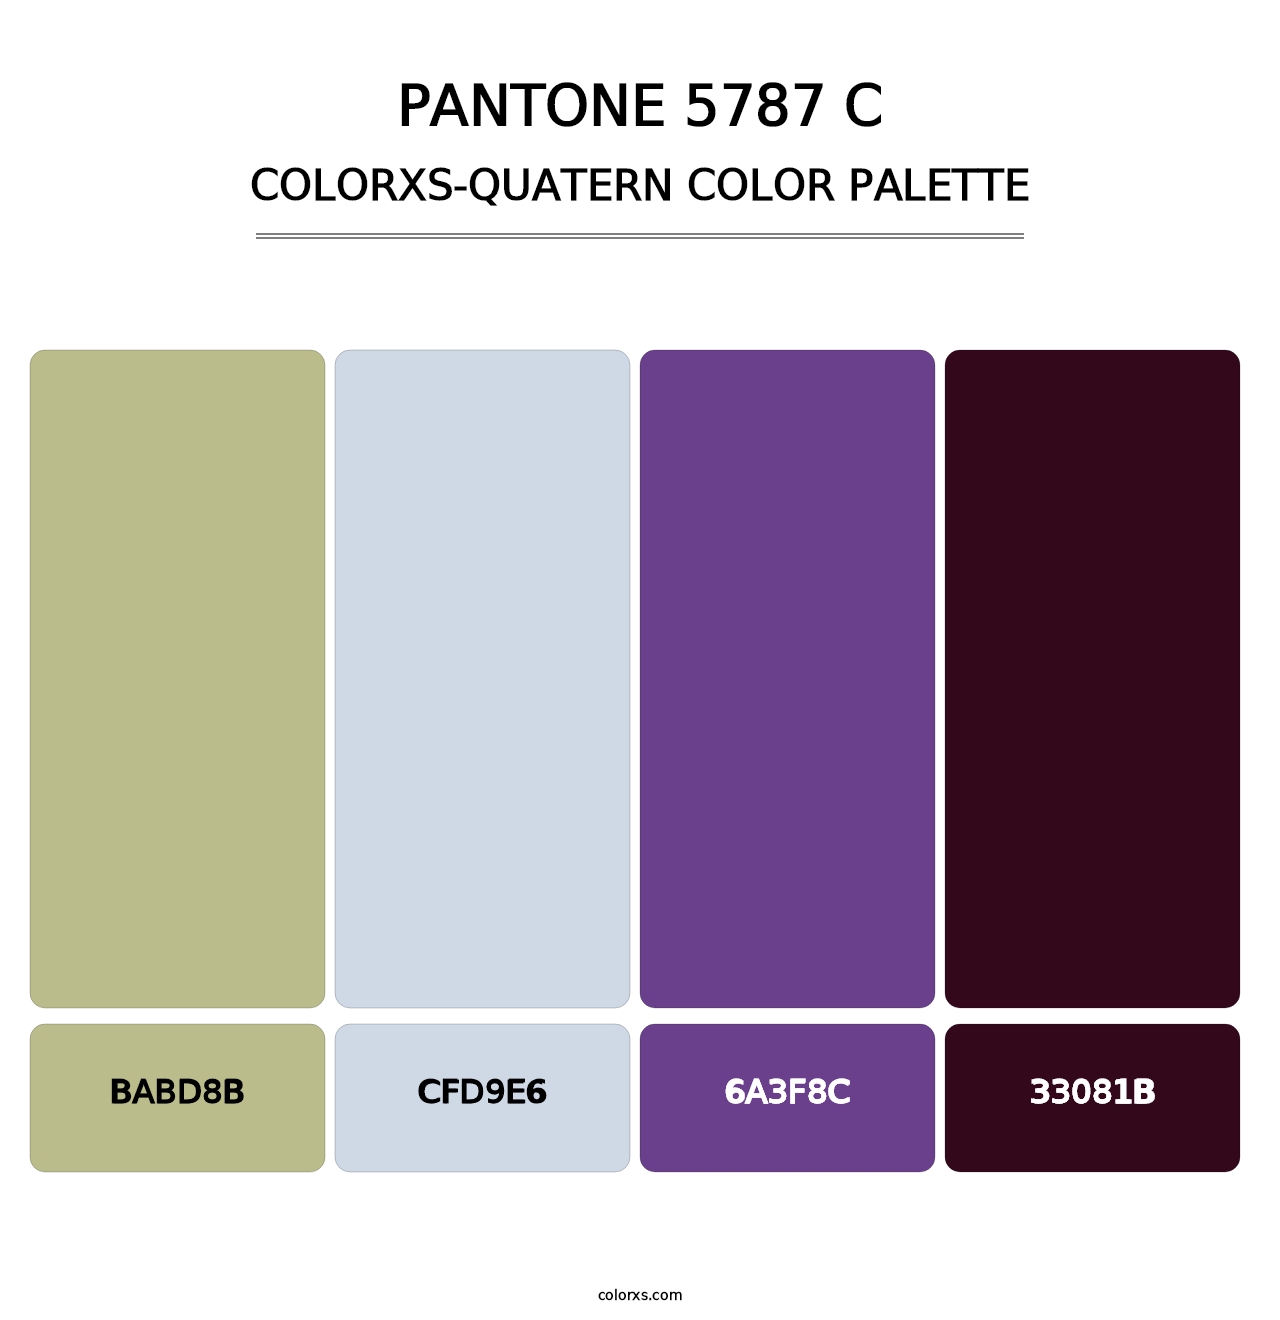 PANTONE 5787 C - Colorxs Quatern Palette